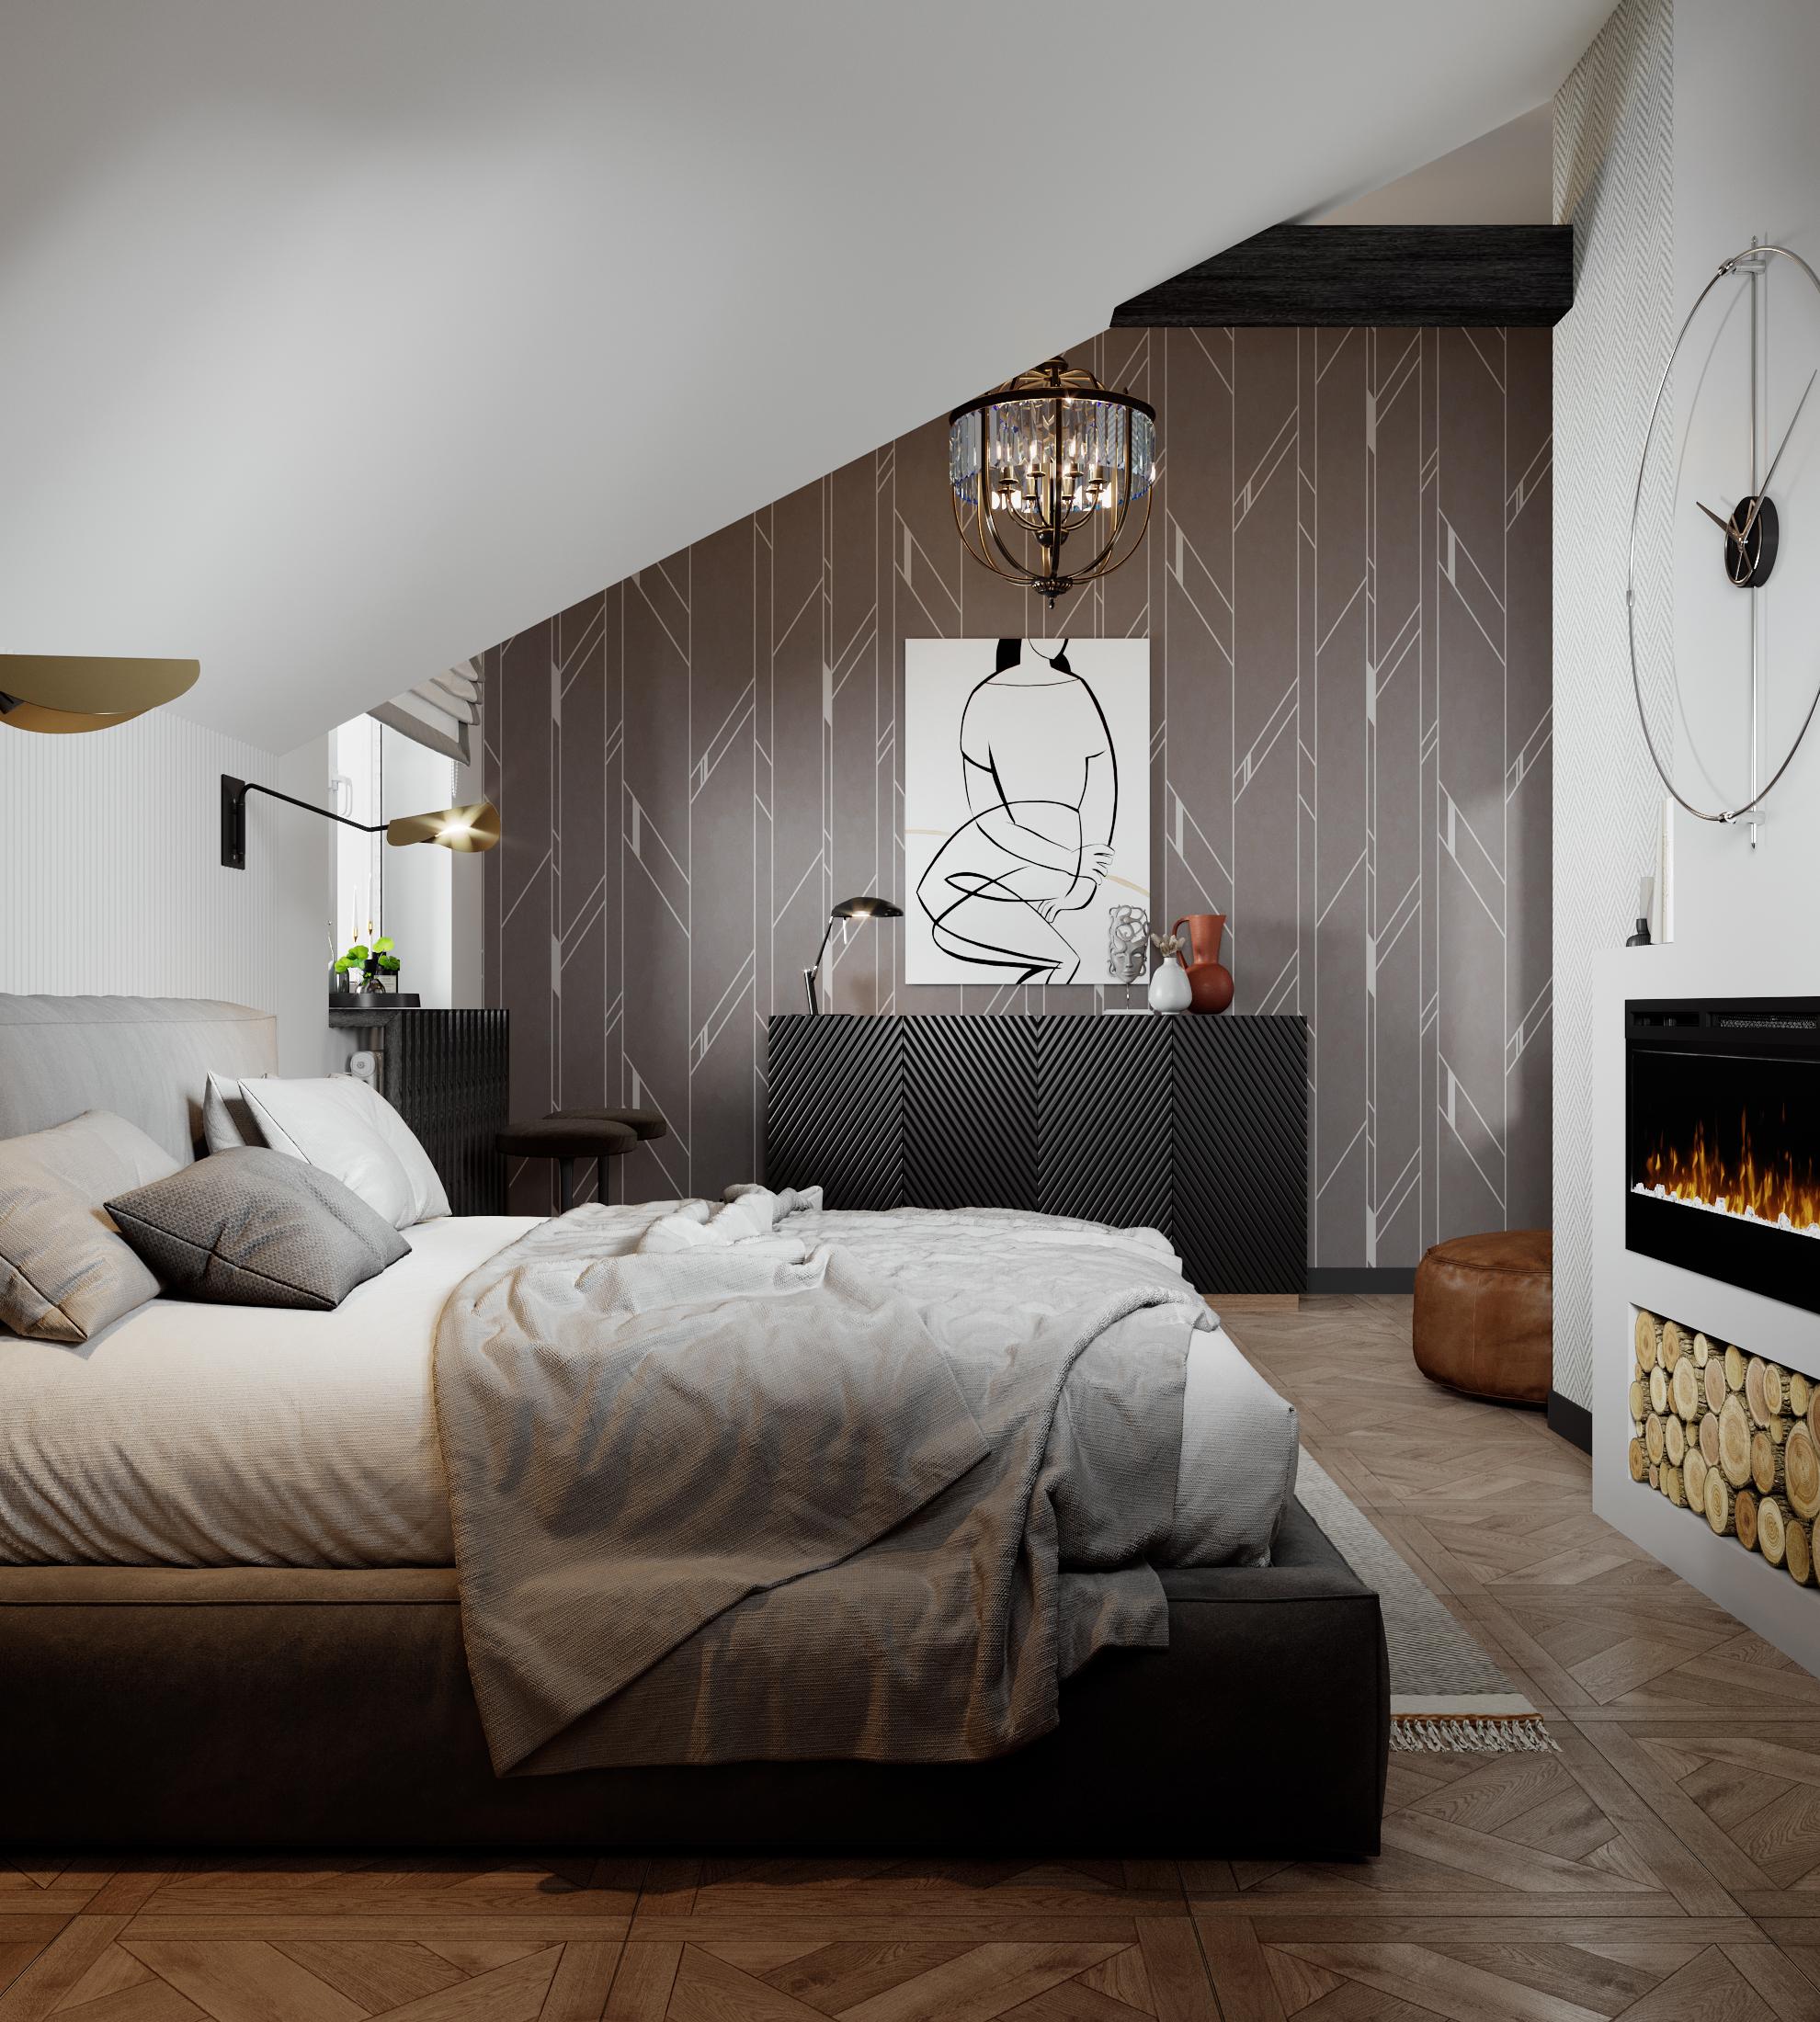 Интерьер спальни cветильниками над кроватью в стиле лофт